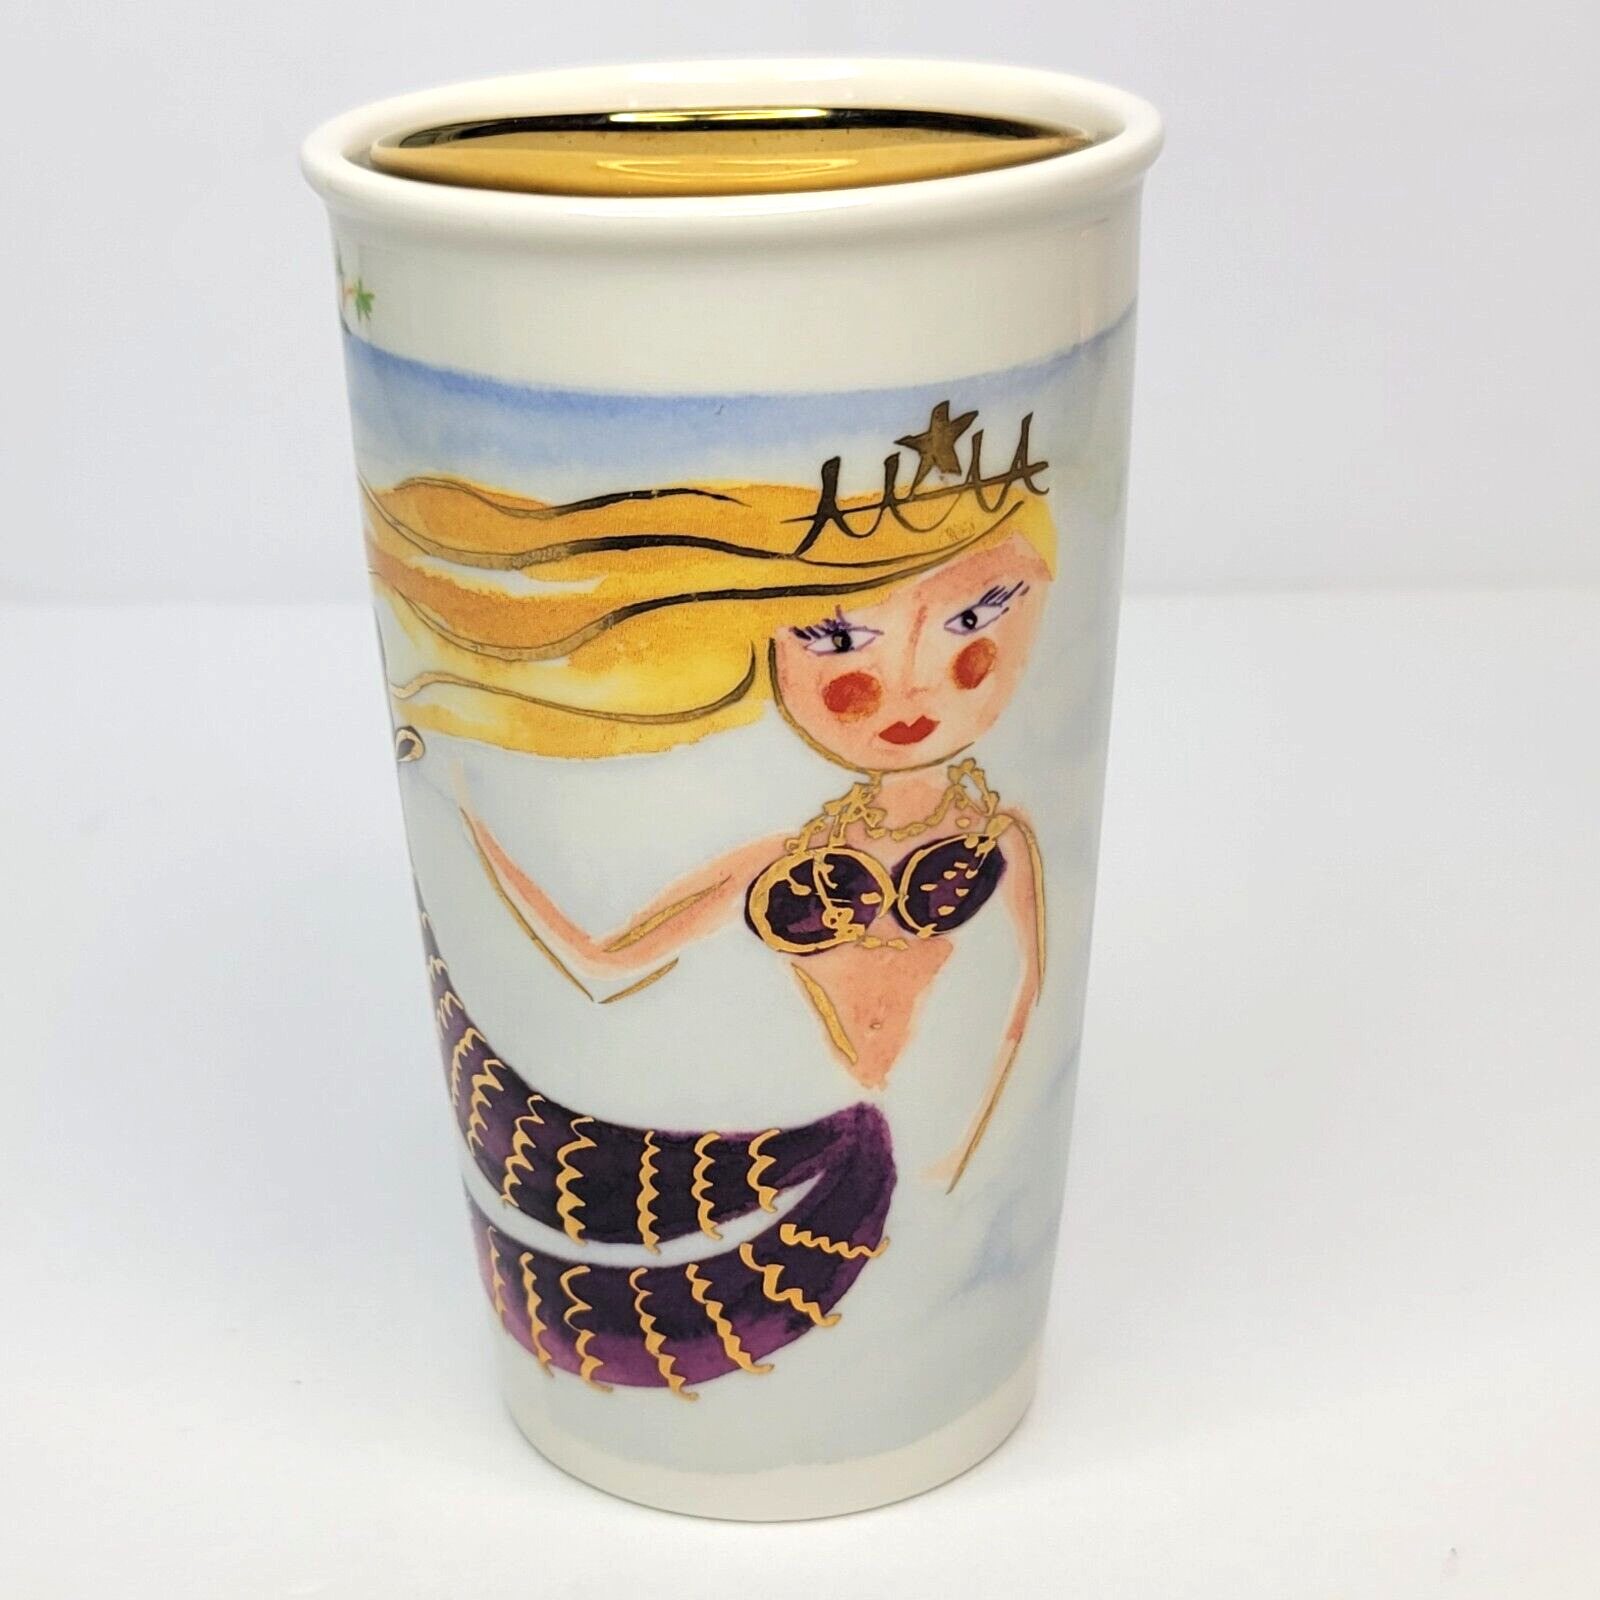 2015 Starbucks Siren Mermaid Ceramic Travel Mug Tumbler 12oz Gold Lid EUC